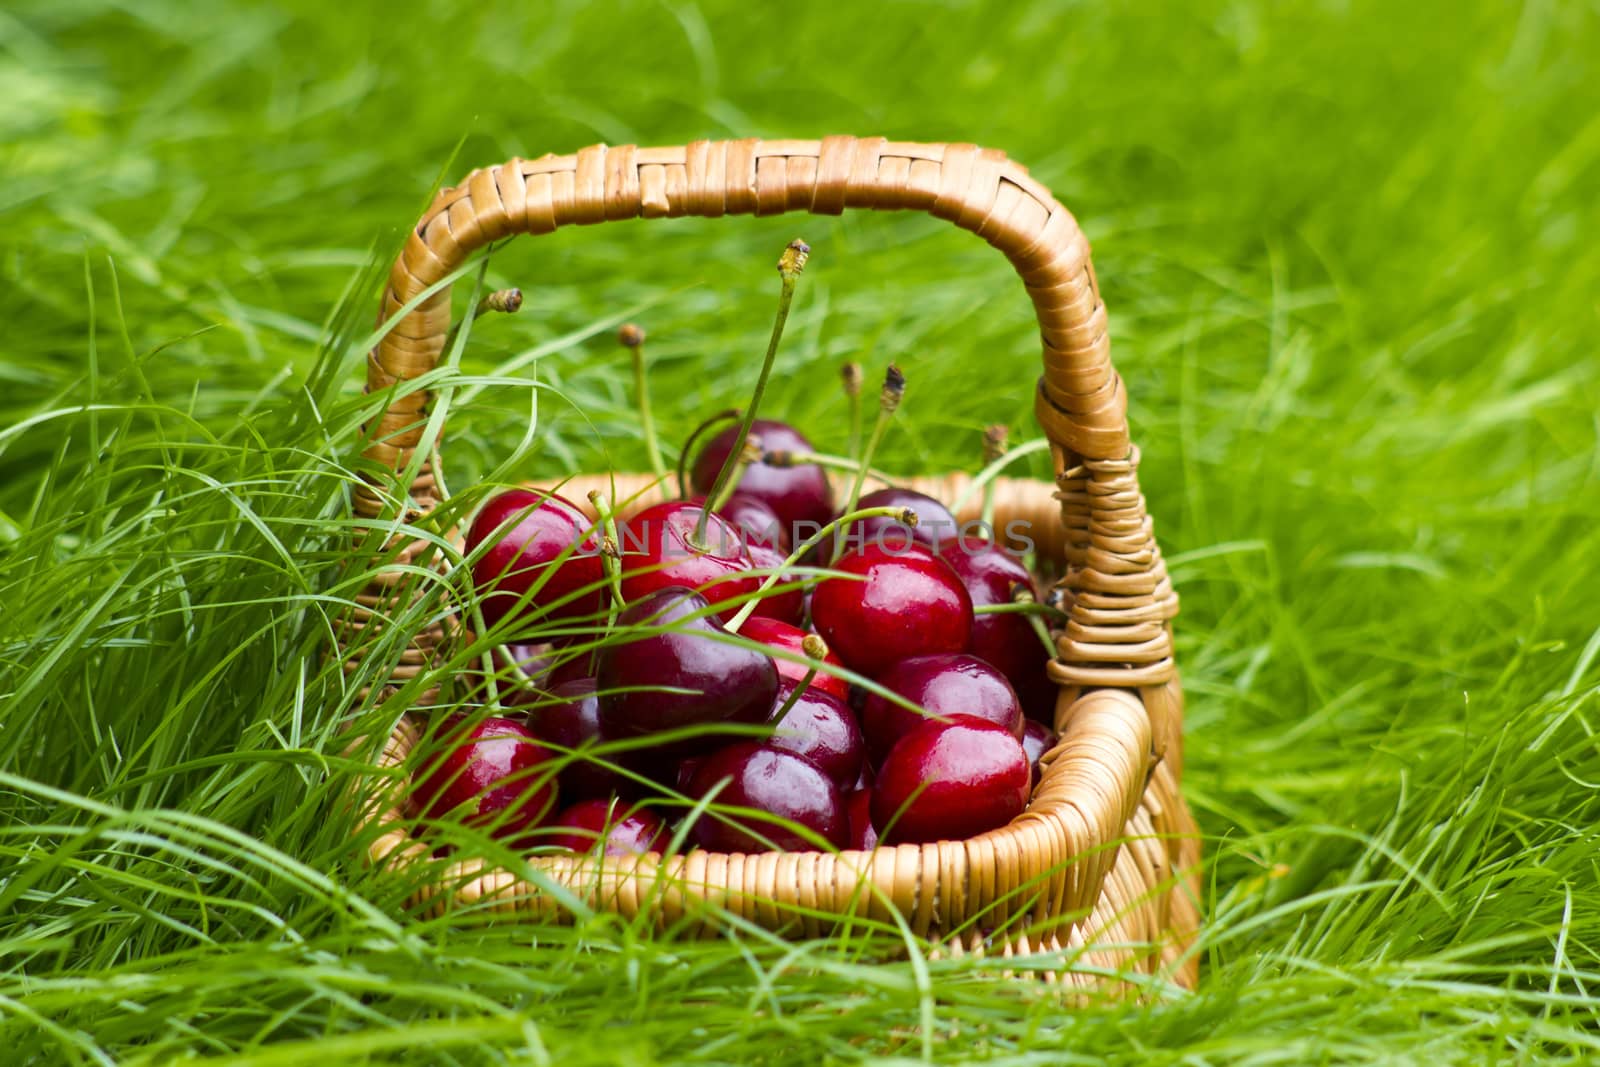 cherries in a basket in summer grass